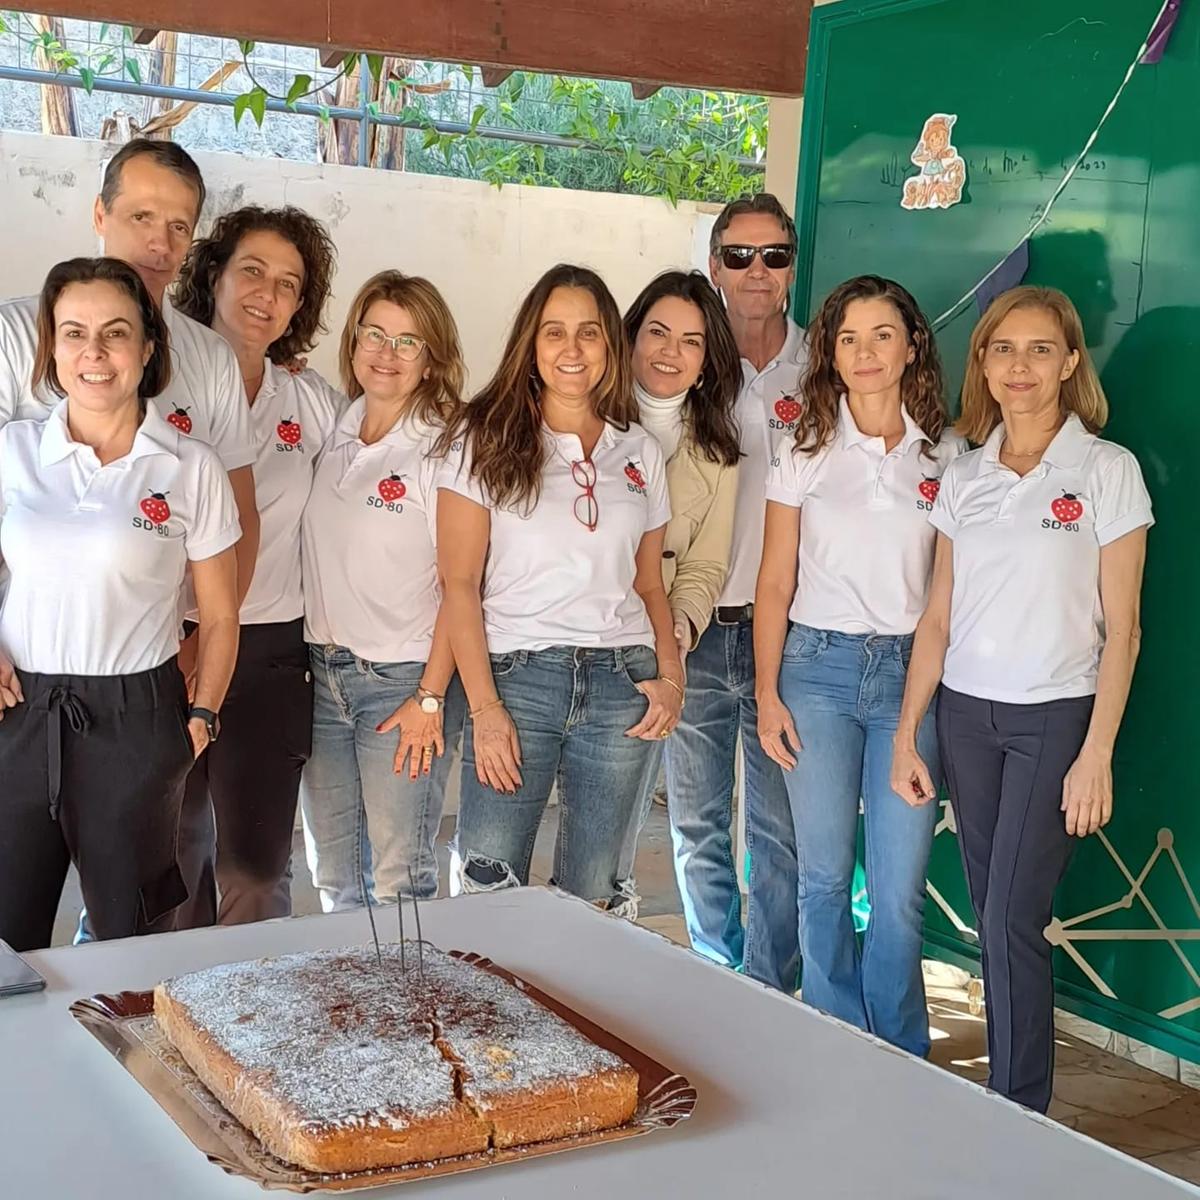 Grupo SD-80 conta com cerca de 40 voluntários. Associação nasceu inspirada na ação solidária de Joaninha Caixeta (Foto/Reprodução)